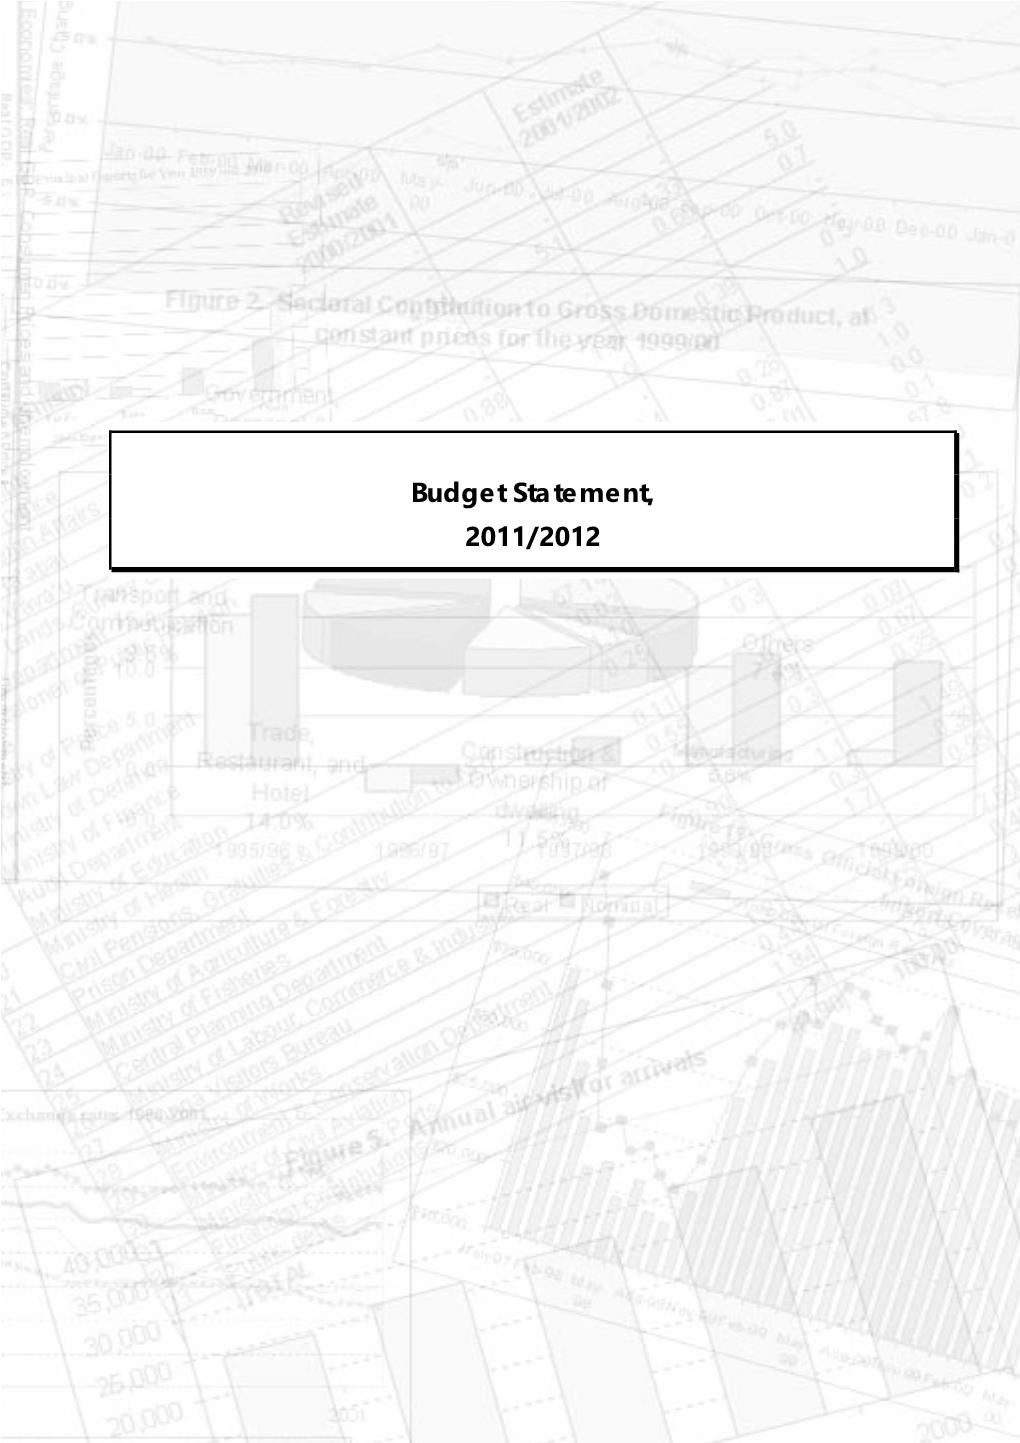 Budget Statement, 2011/2012